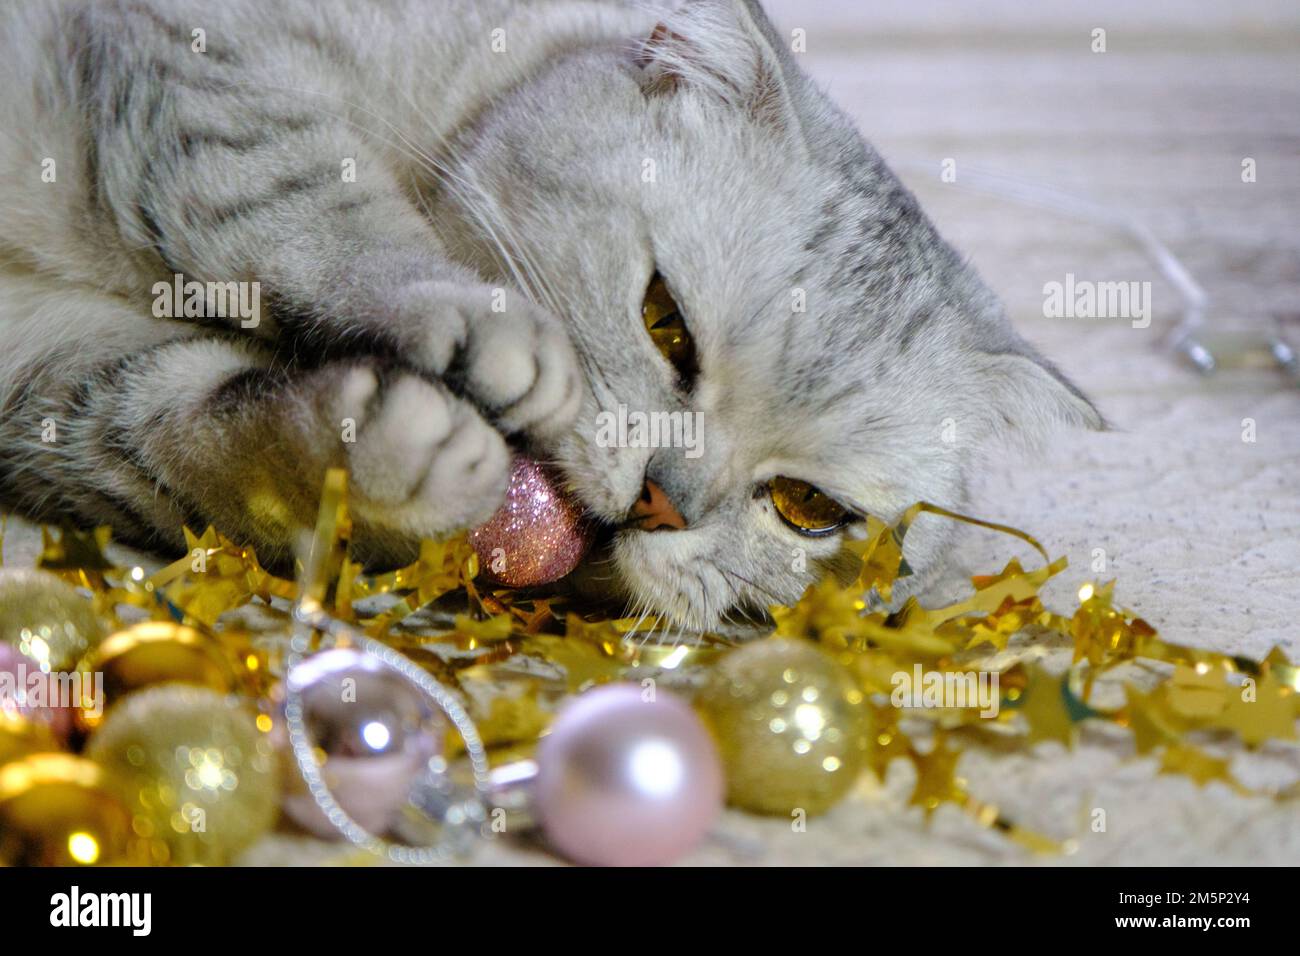 Chat écossais gris avec des yeux jaunes. Dormir sur une couverture avec des décorations de Noël. Concept pour le nouvel an, Noël, vacances confortables à la maison, vacances Banque D'Images